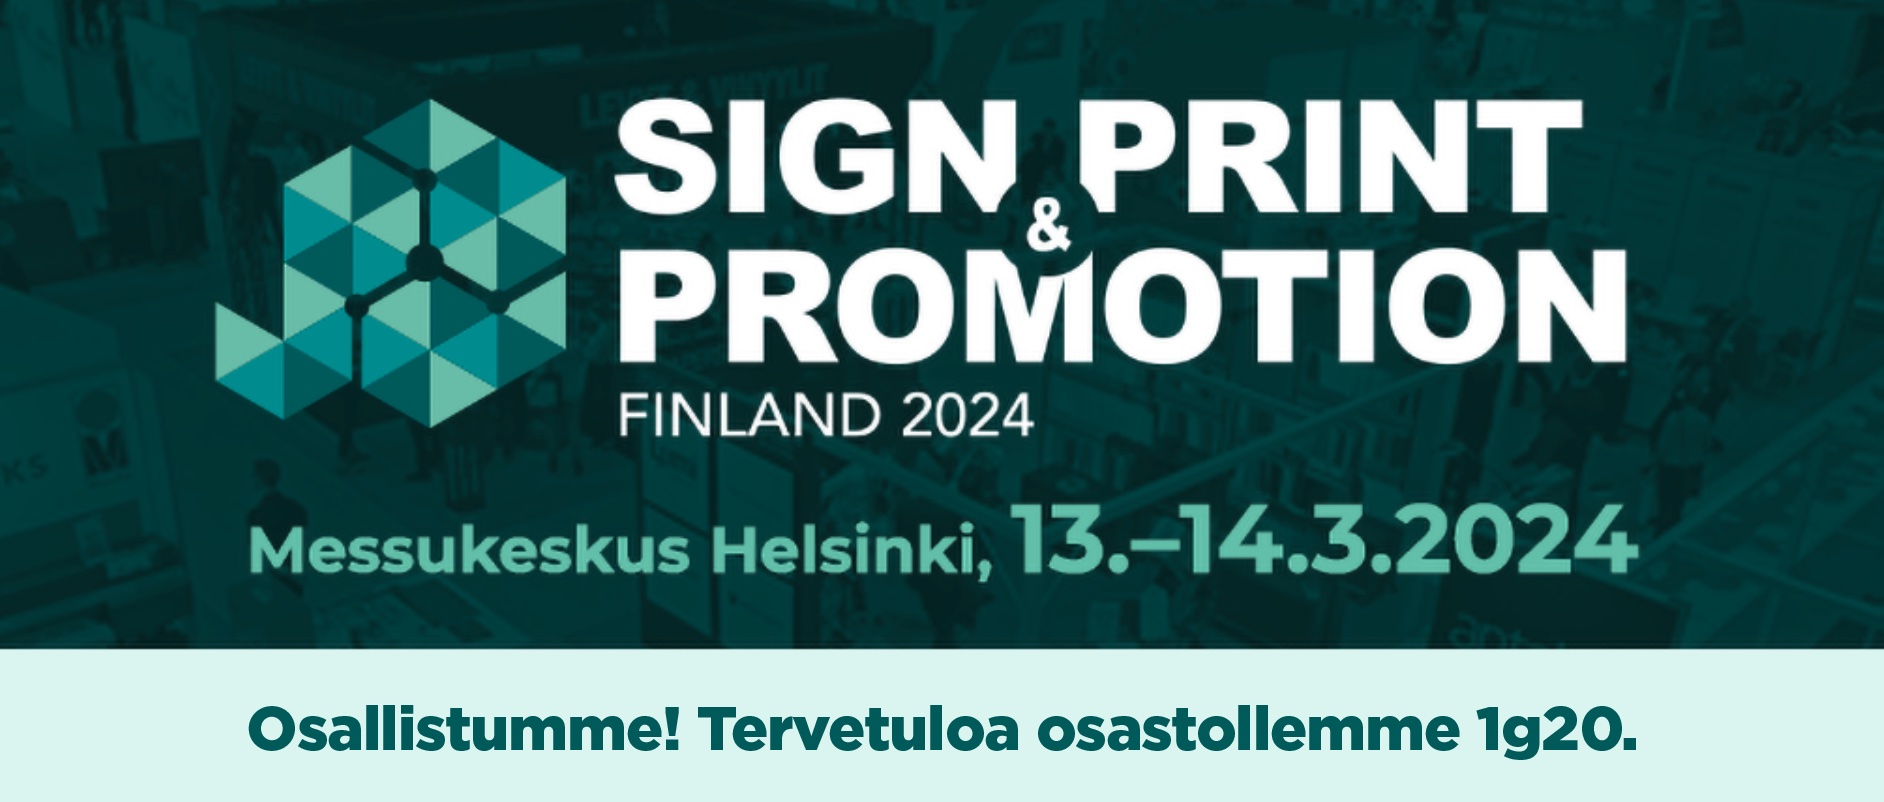 Osallistumme Sign & print & promotion -tapahtumaan Helsingin messukeskuksessa.